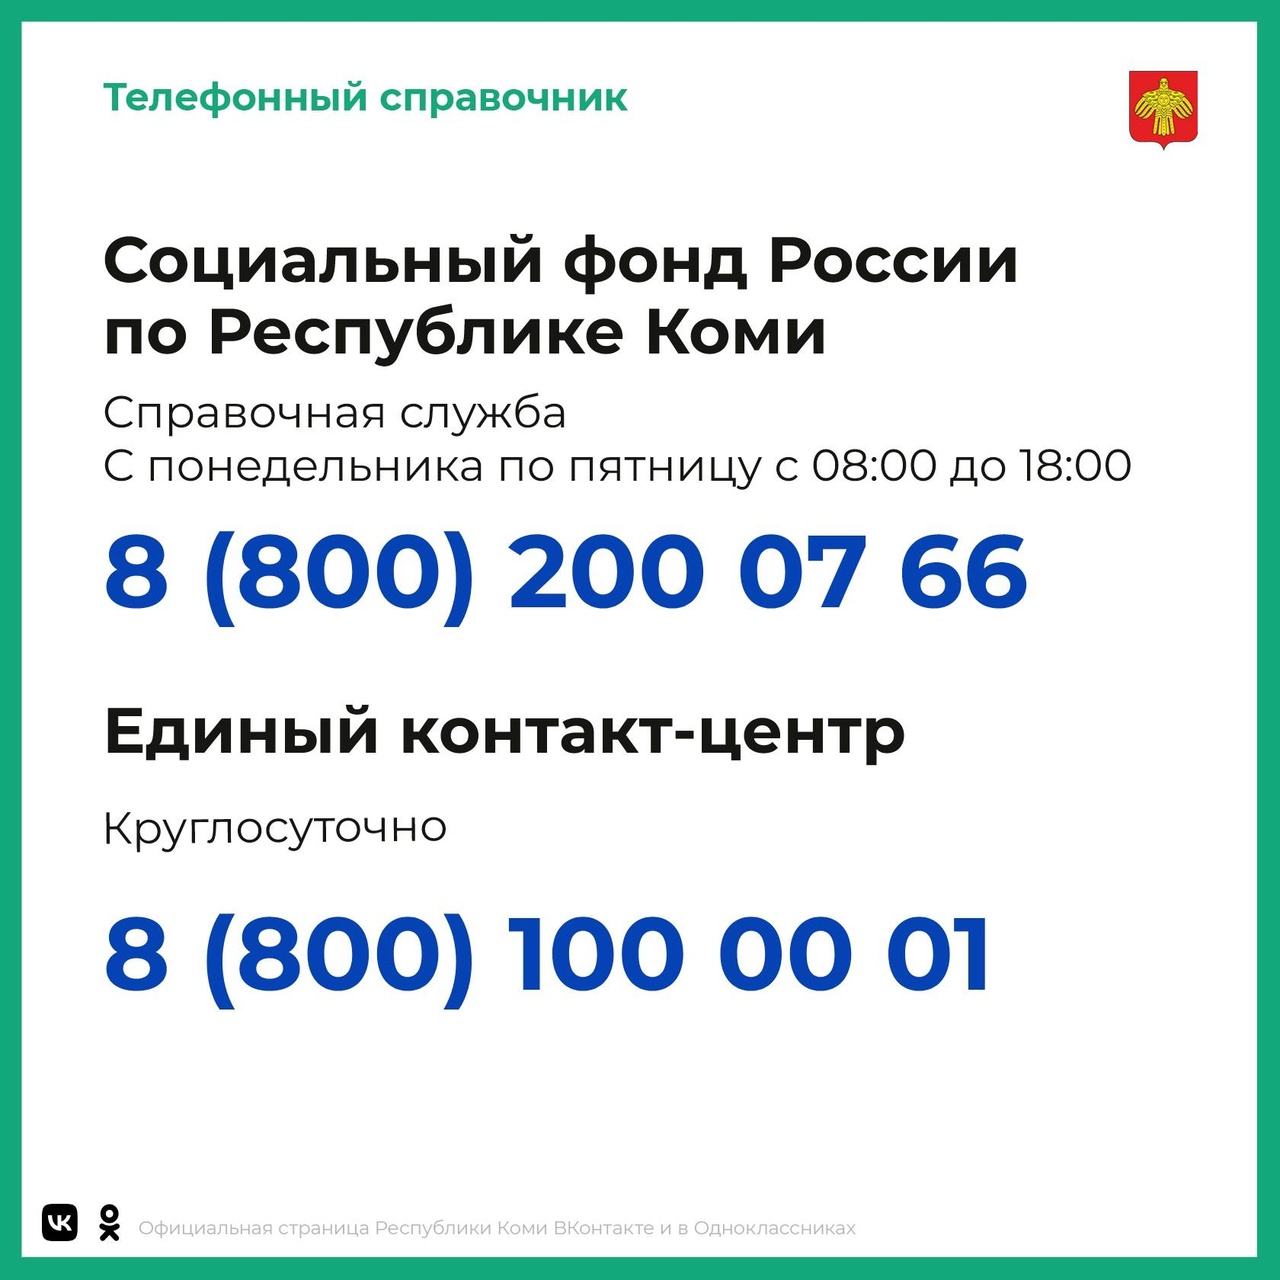 Социальный фонд России по Республике Коми.